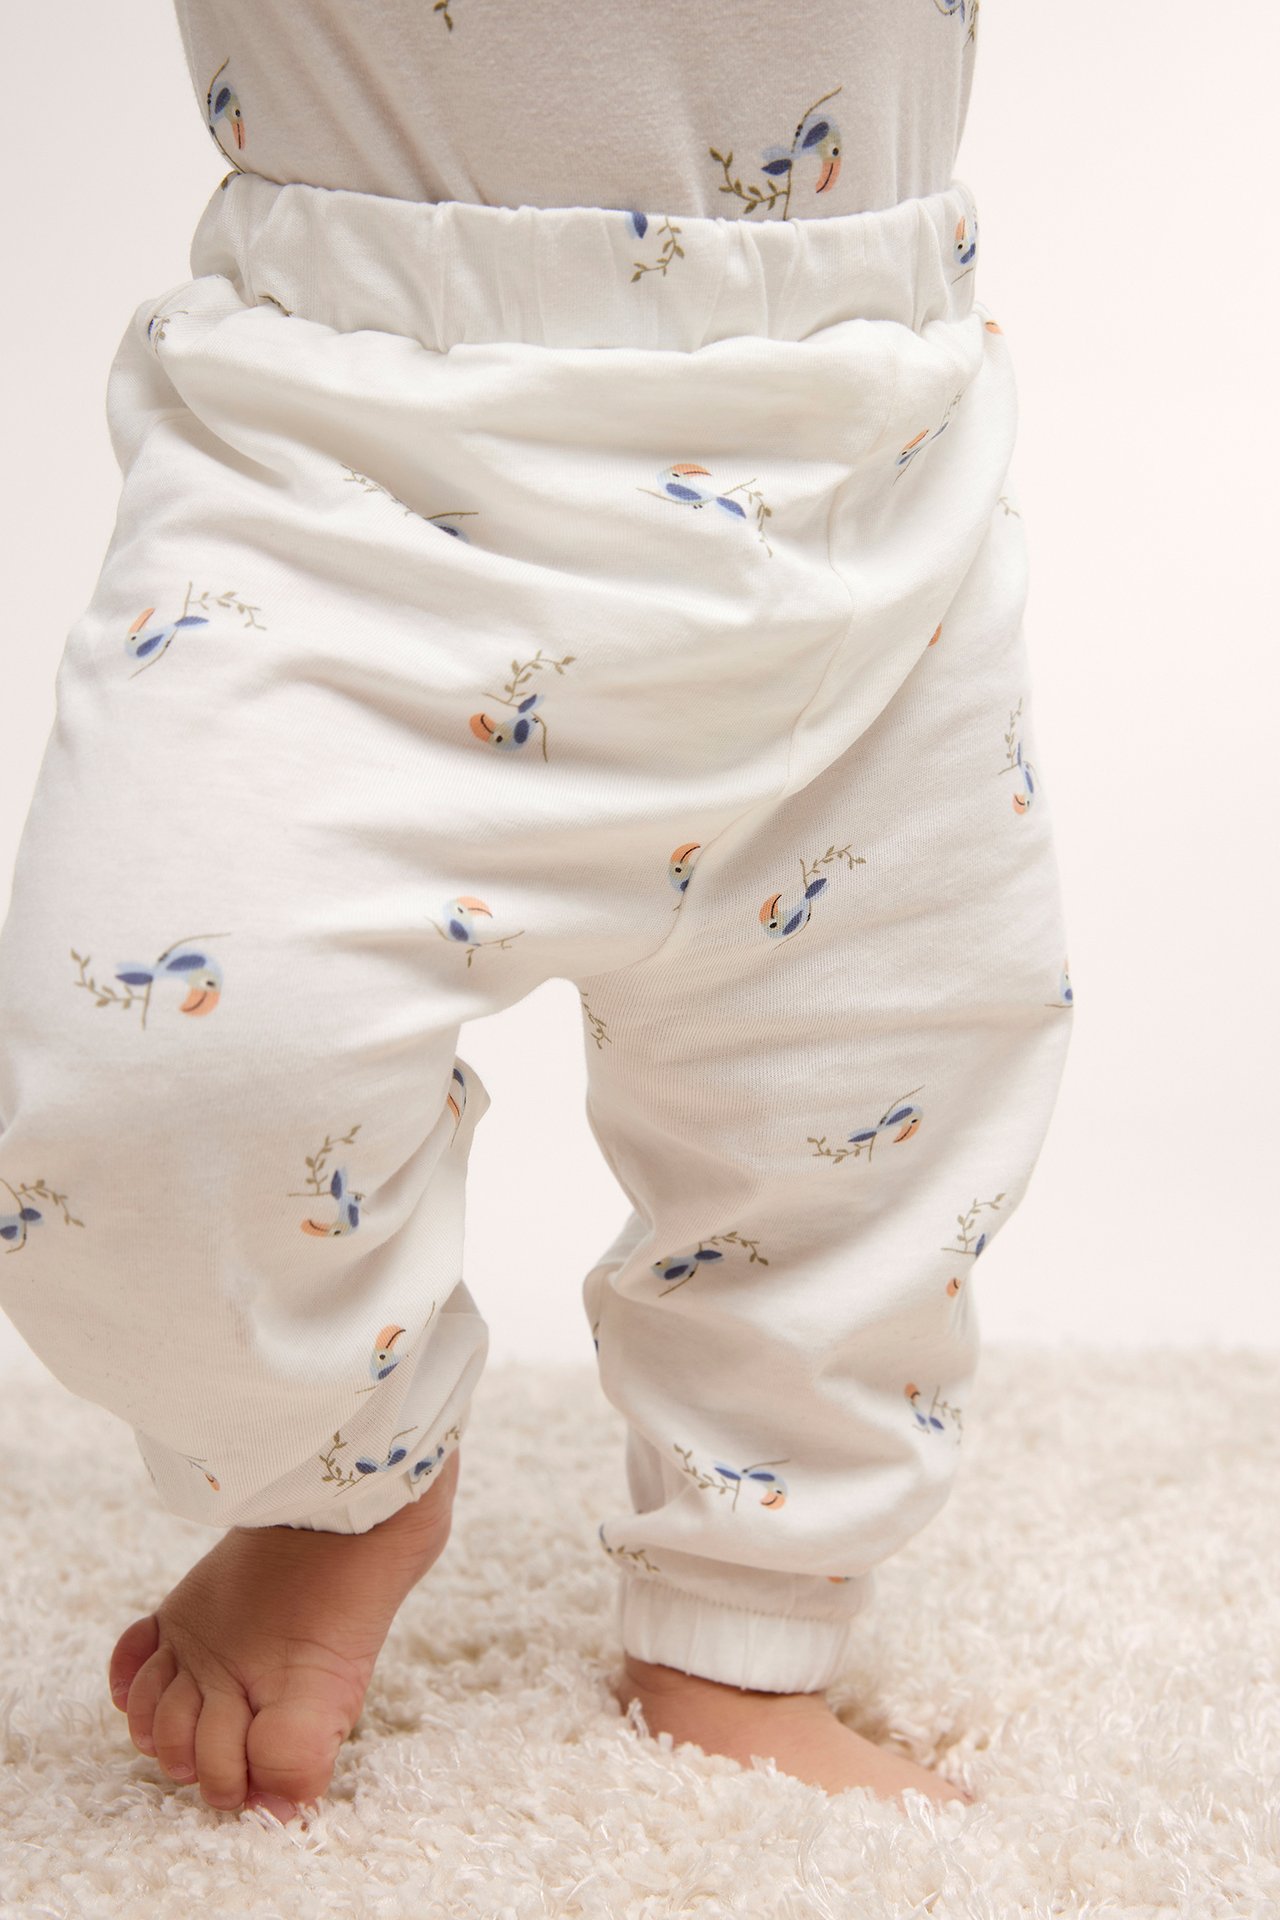 Kuviolliset vauvojen housut Luonnonvalkoinen - null - 1